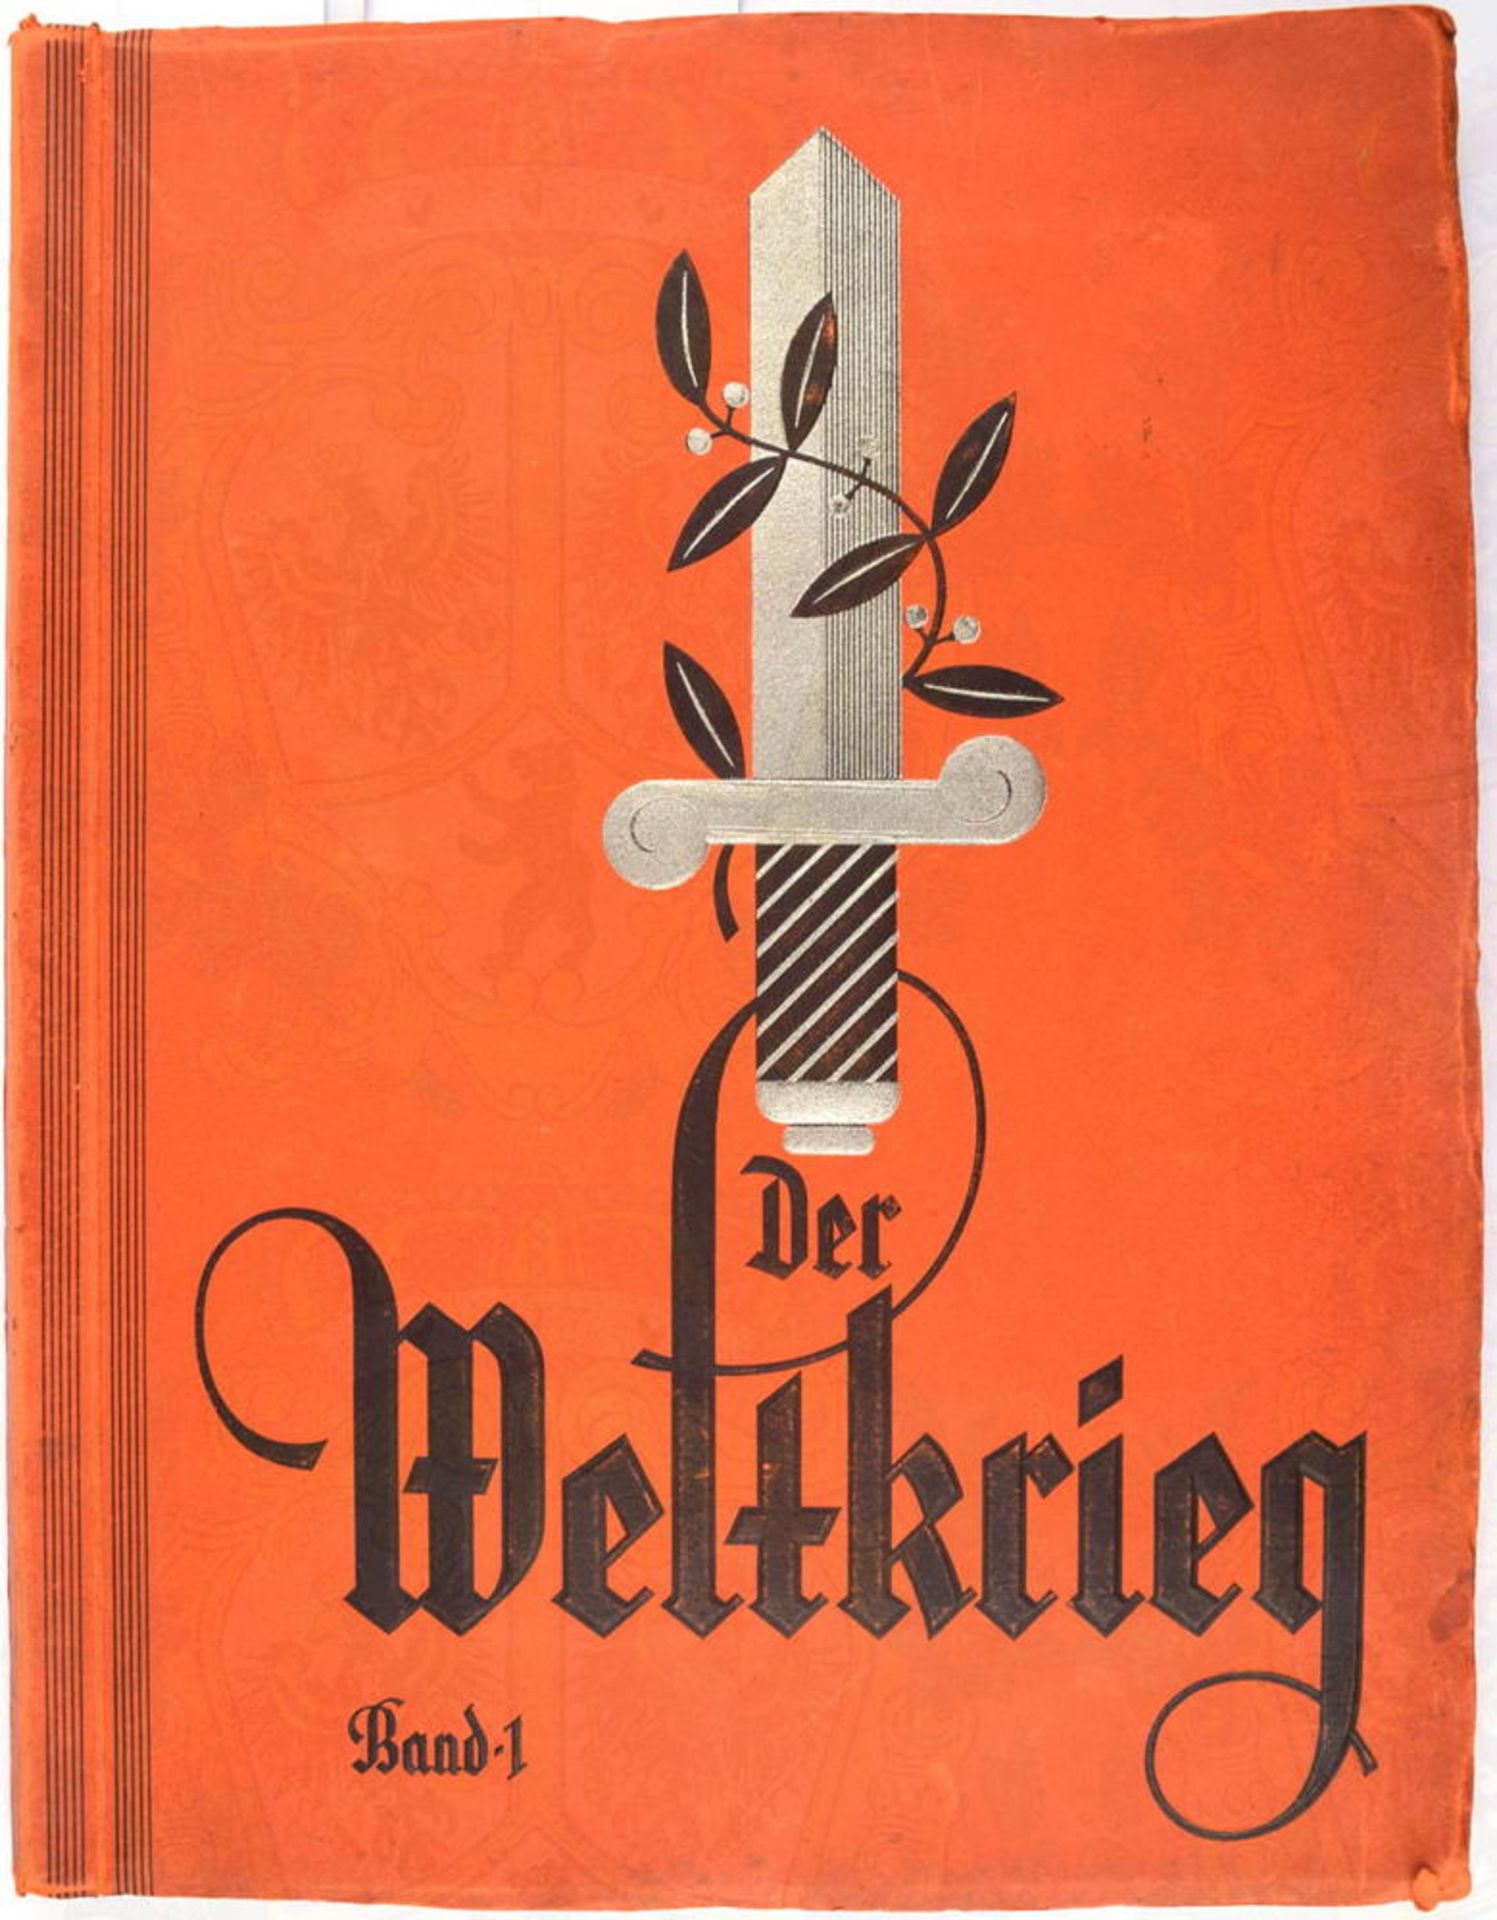 ALBUM - DER WELTKRIEG 1914-1918